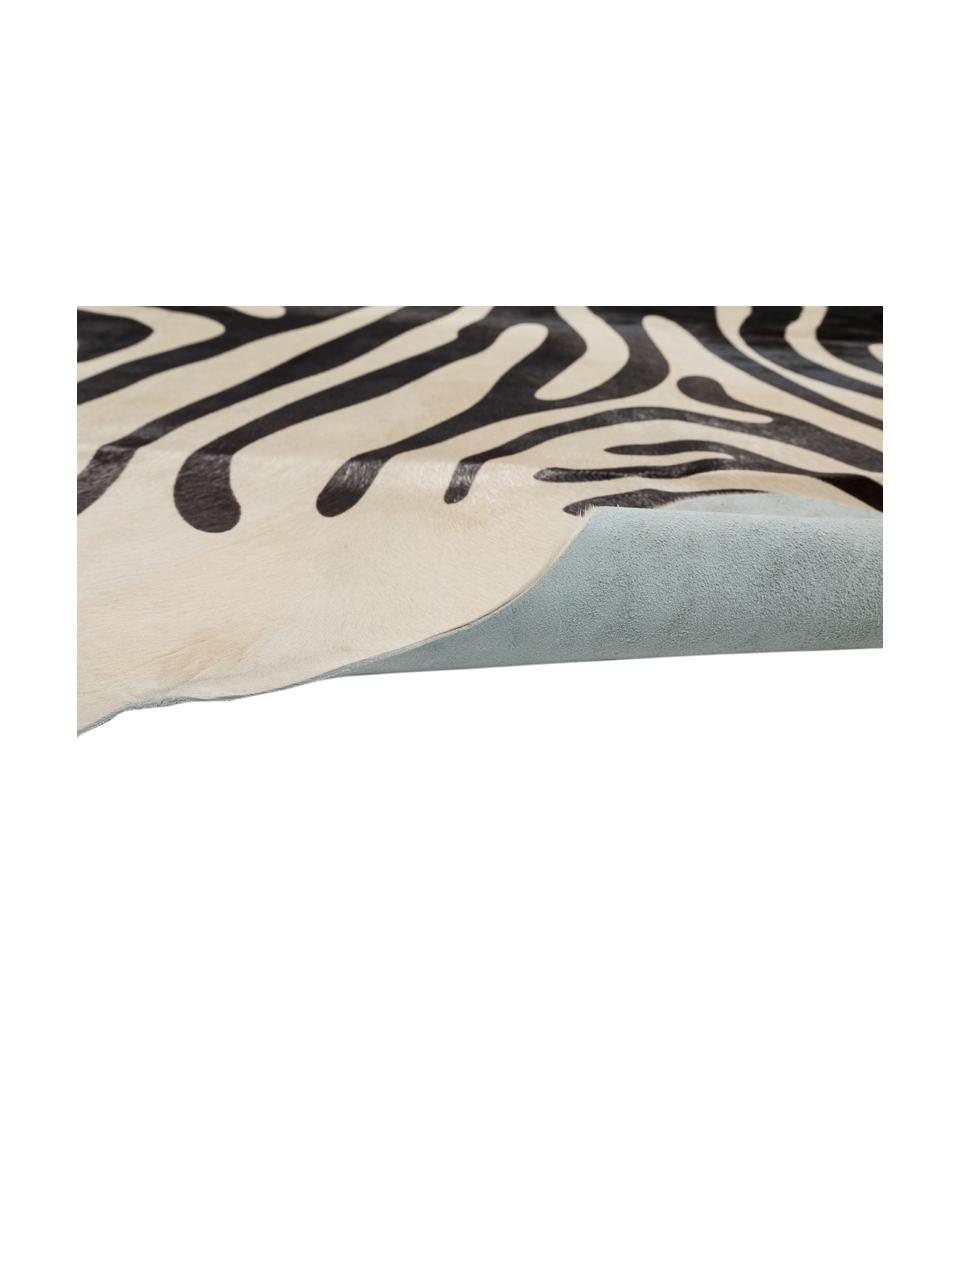 Kuhfell-Teppich Zebra, Kuhfell, bedruckt, Weiß, Schwarz, 180 x 220 cm